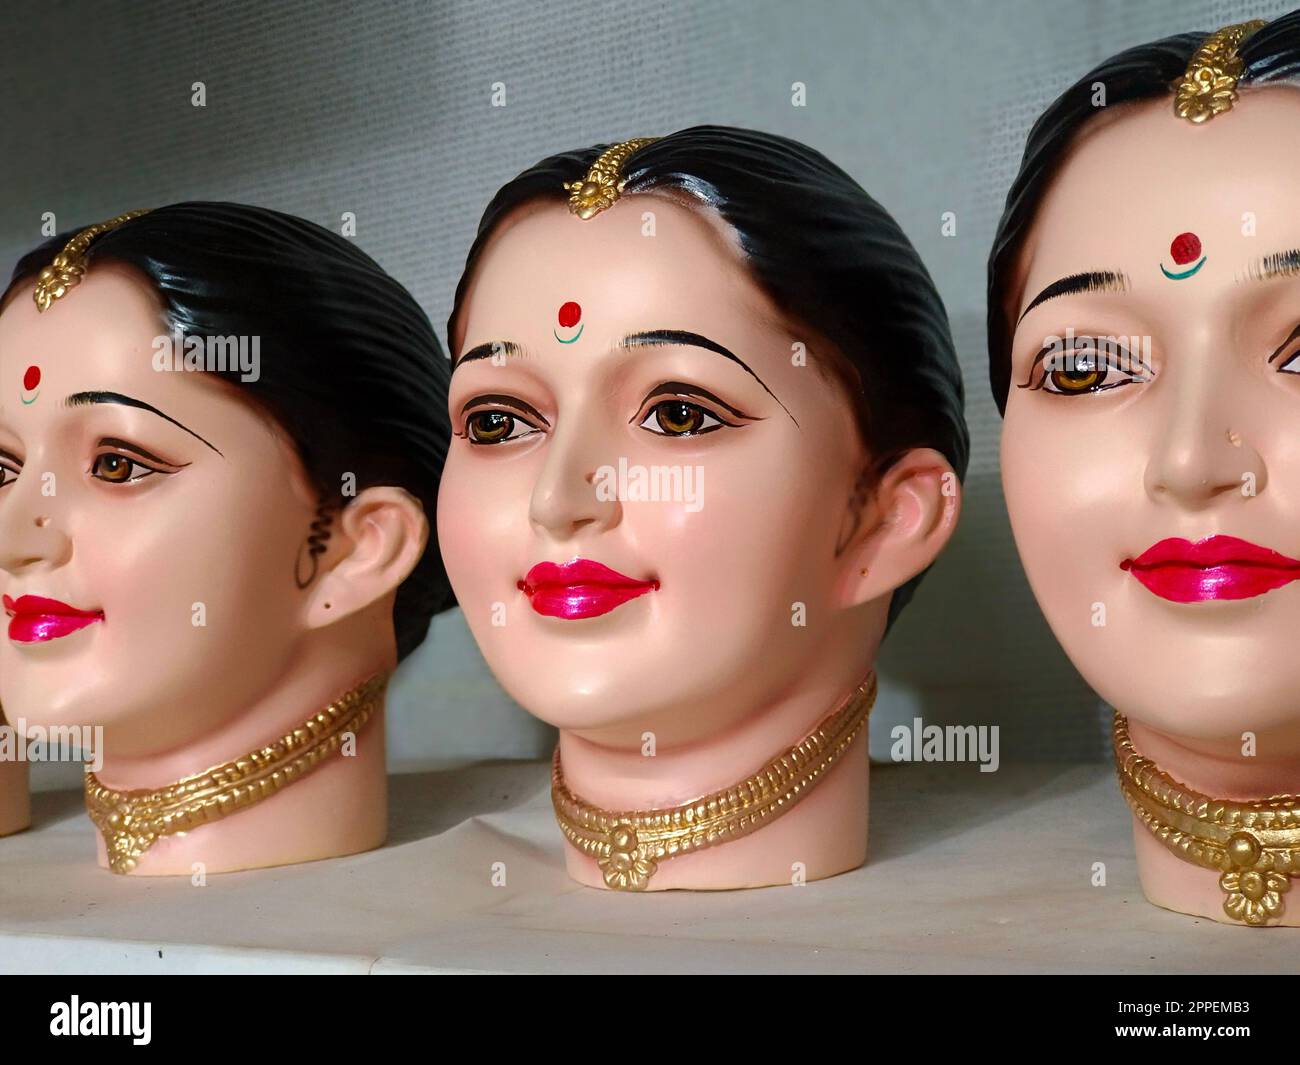 Wunderschönes Idol der Göttin Gauri während des Ganesh Festivals, Gouri oder Gauri, hinduistische Göttin Durga, Pune, Maharashtra, Indien Stockfoto